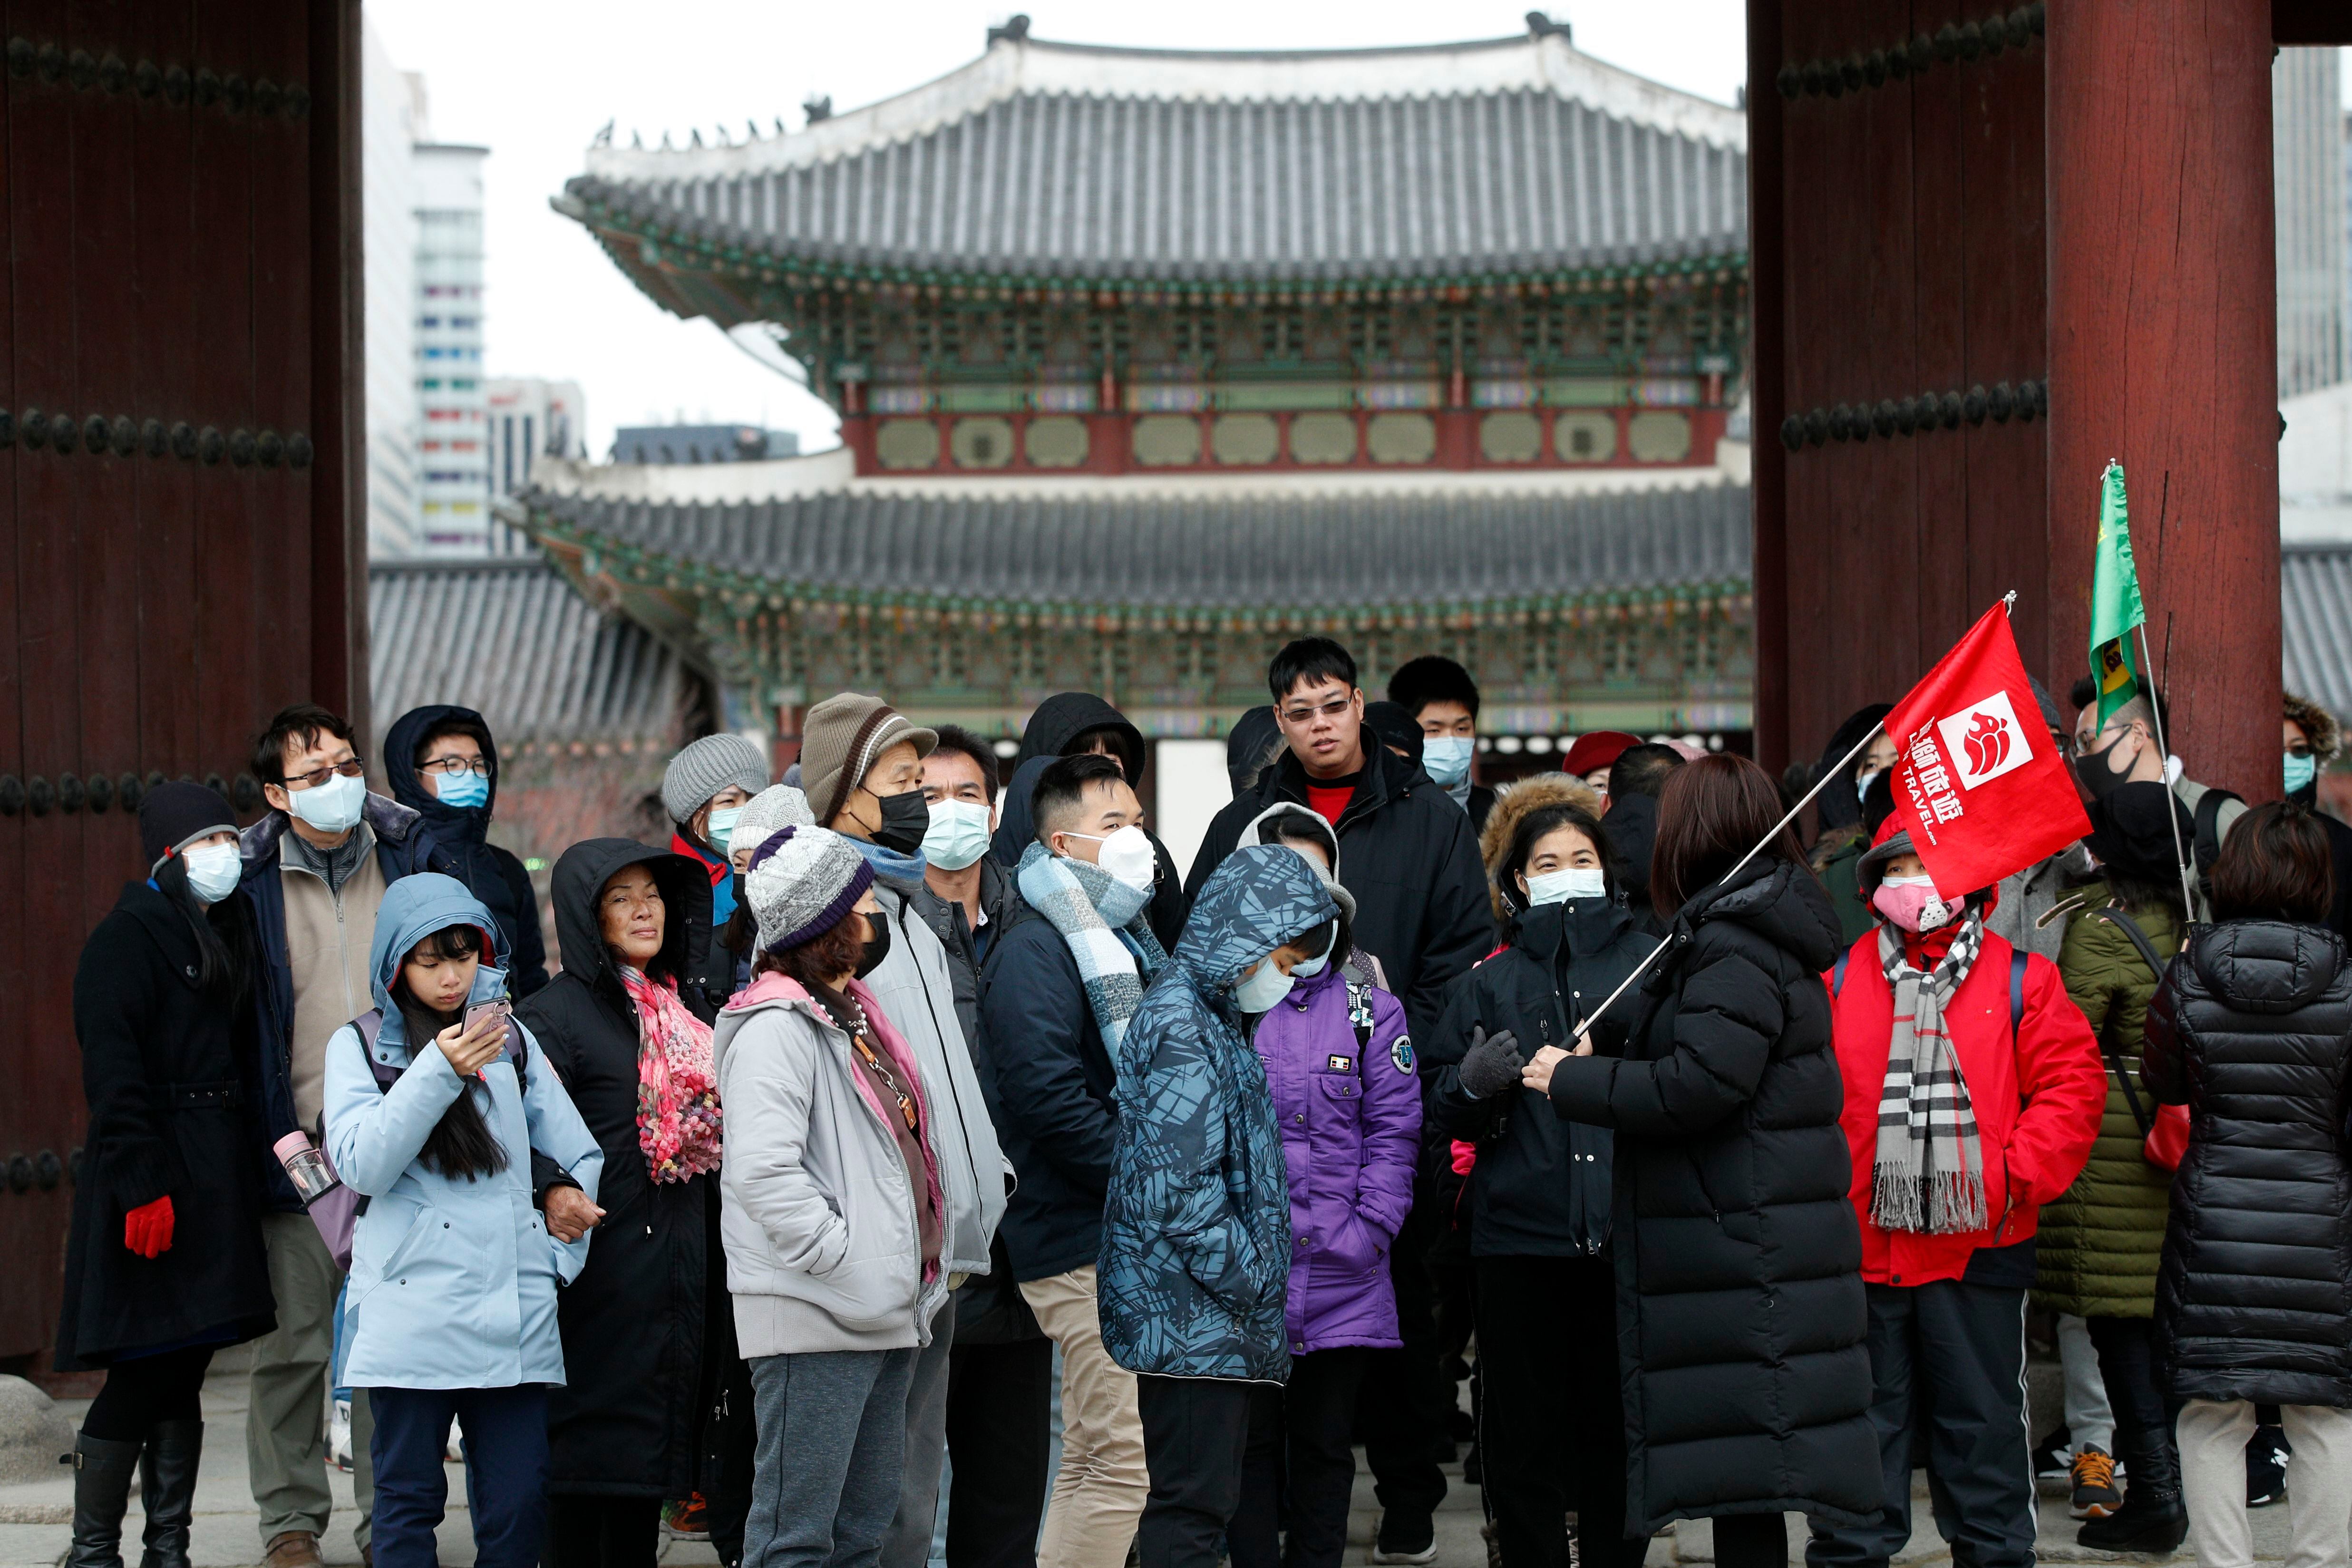 2020년 1월 27일 서울 종로구 경복궁을 찾은 중국인 관광객들의 모습./뉴스1